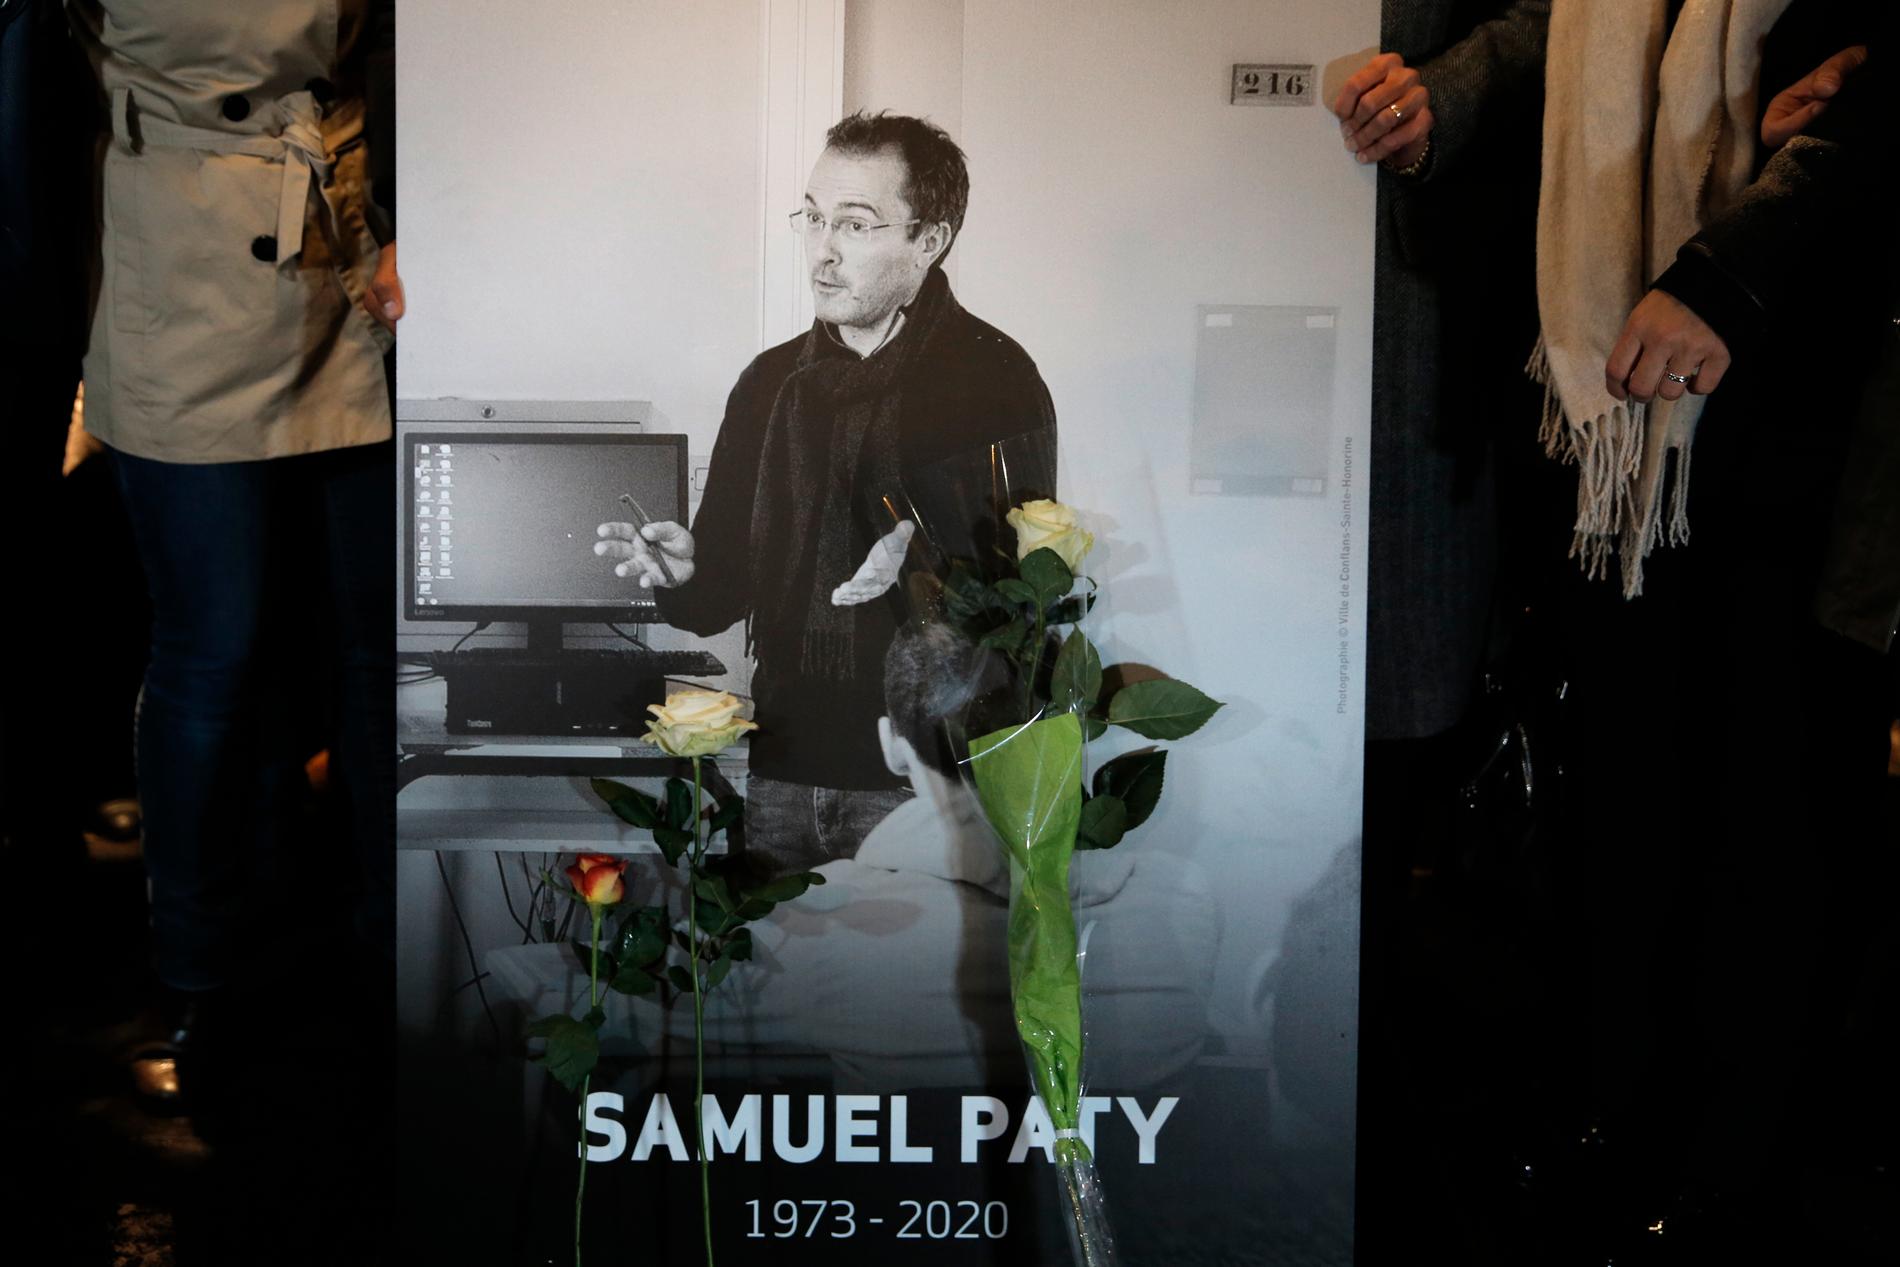 Mordet på Samuel Paty föregicks av att hans uppgifter spreds i sociala medier. nu vill Frankrike skärpa lagstiftningen. Foto: Lewis Joly/AP/TT